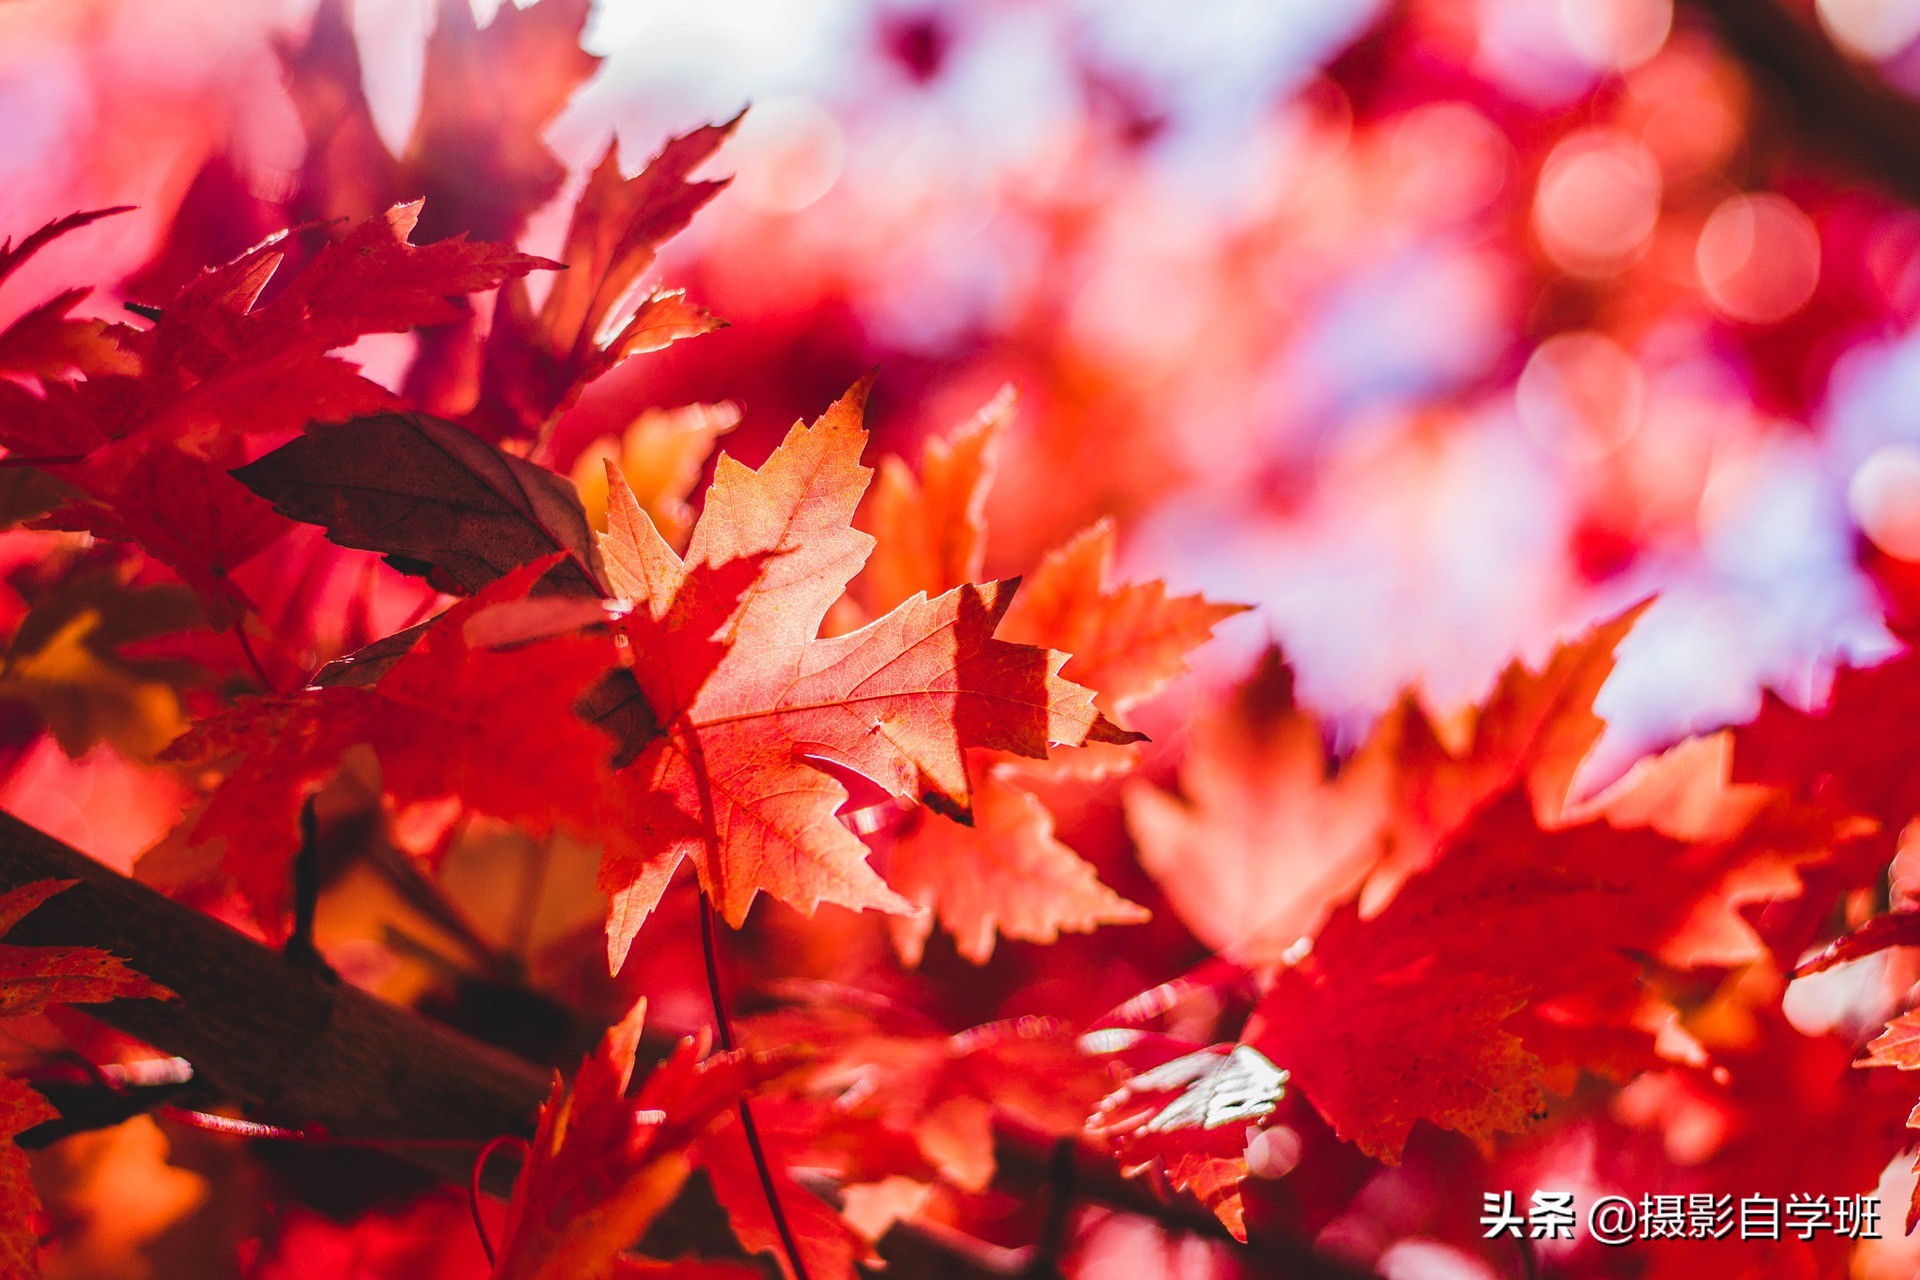 5个对比拍摄手法，帮你整理拍摄思路，让秋季照片更具秋色